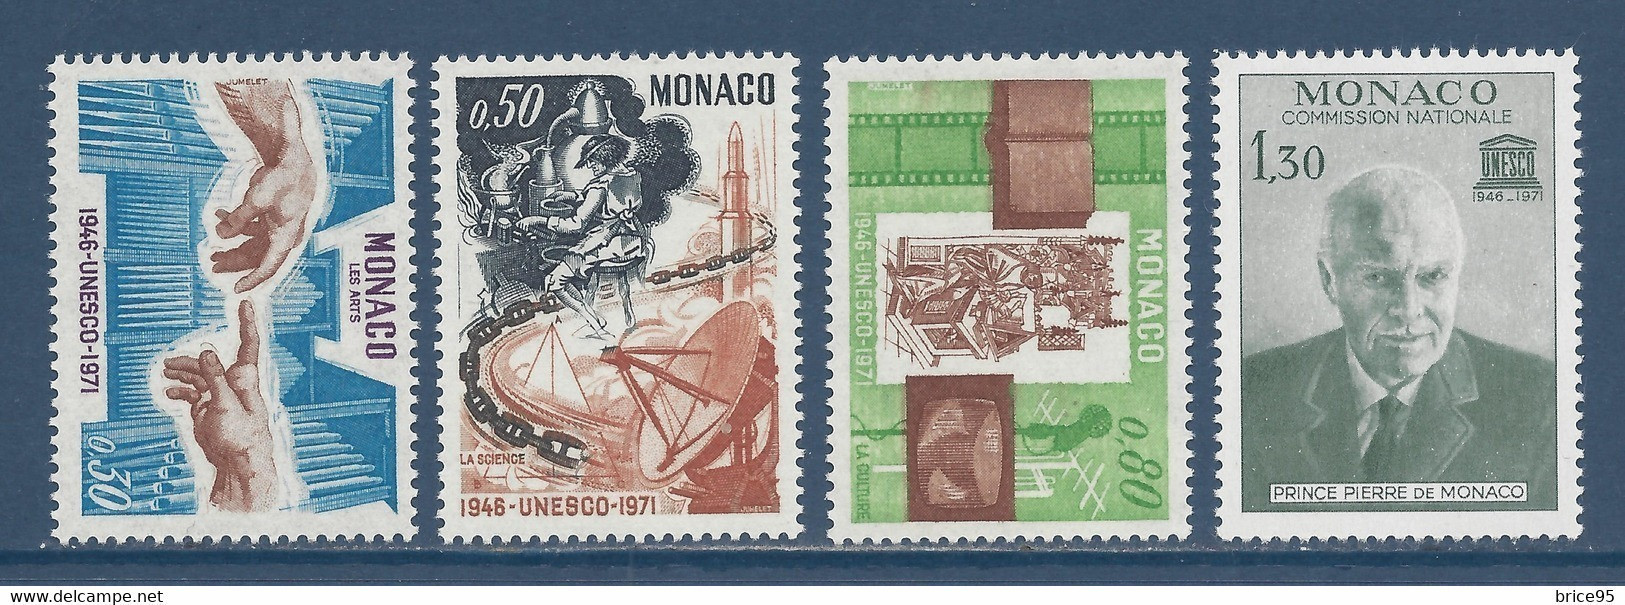 Monaco - YT N° 855 à 858 ** - Neuf Sans Charnière - 1971 - Nuovi